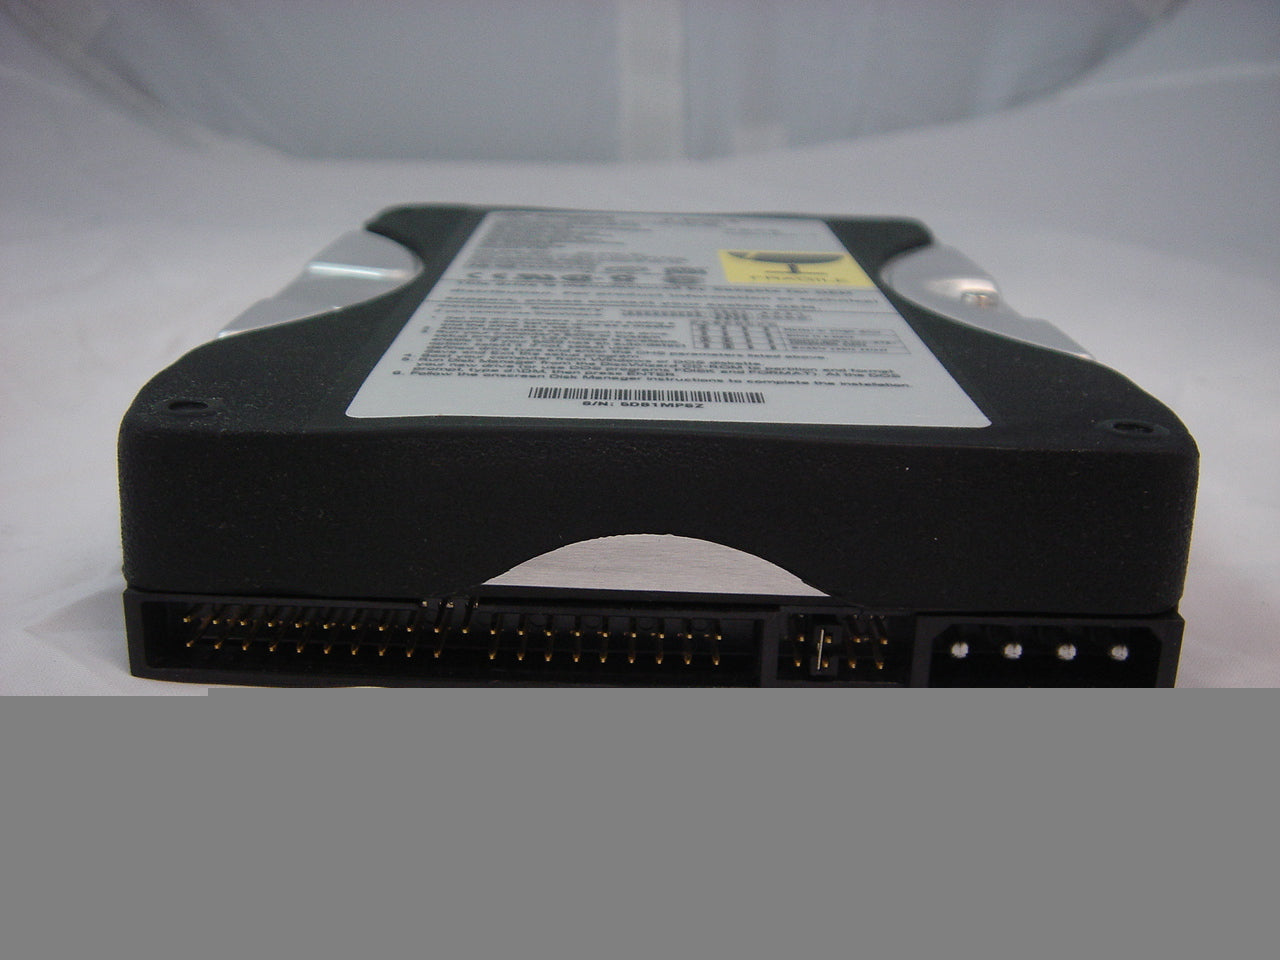 PR12938_9R4005-305_Seagate 10GB IDE (ATA-100) HDD - 5400rpm - 3.5" - Image4